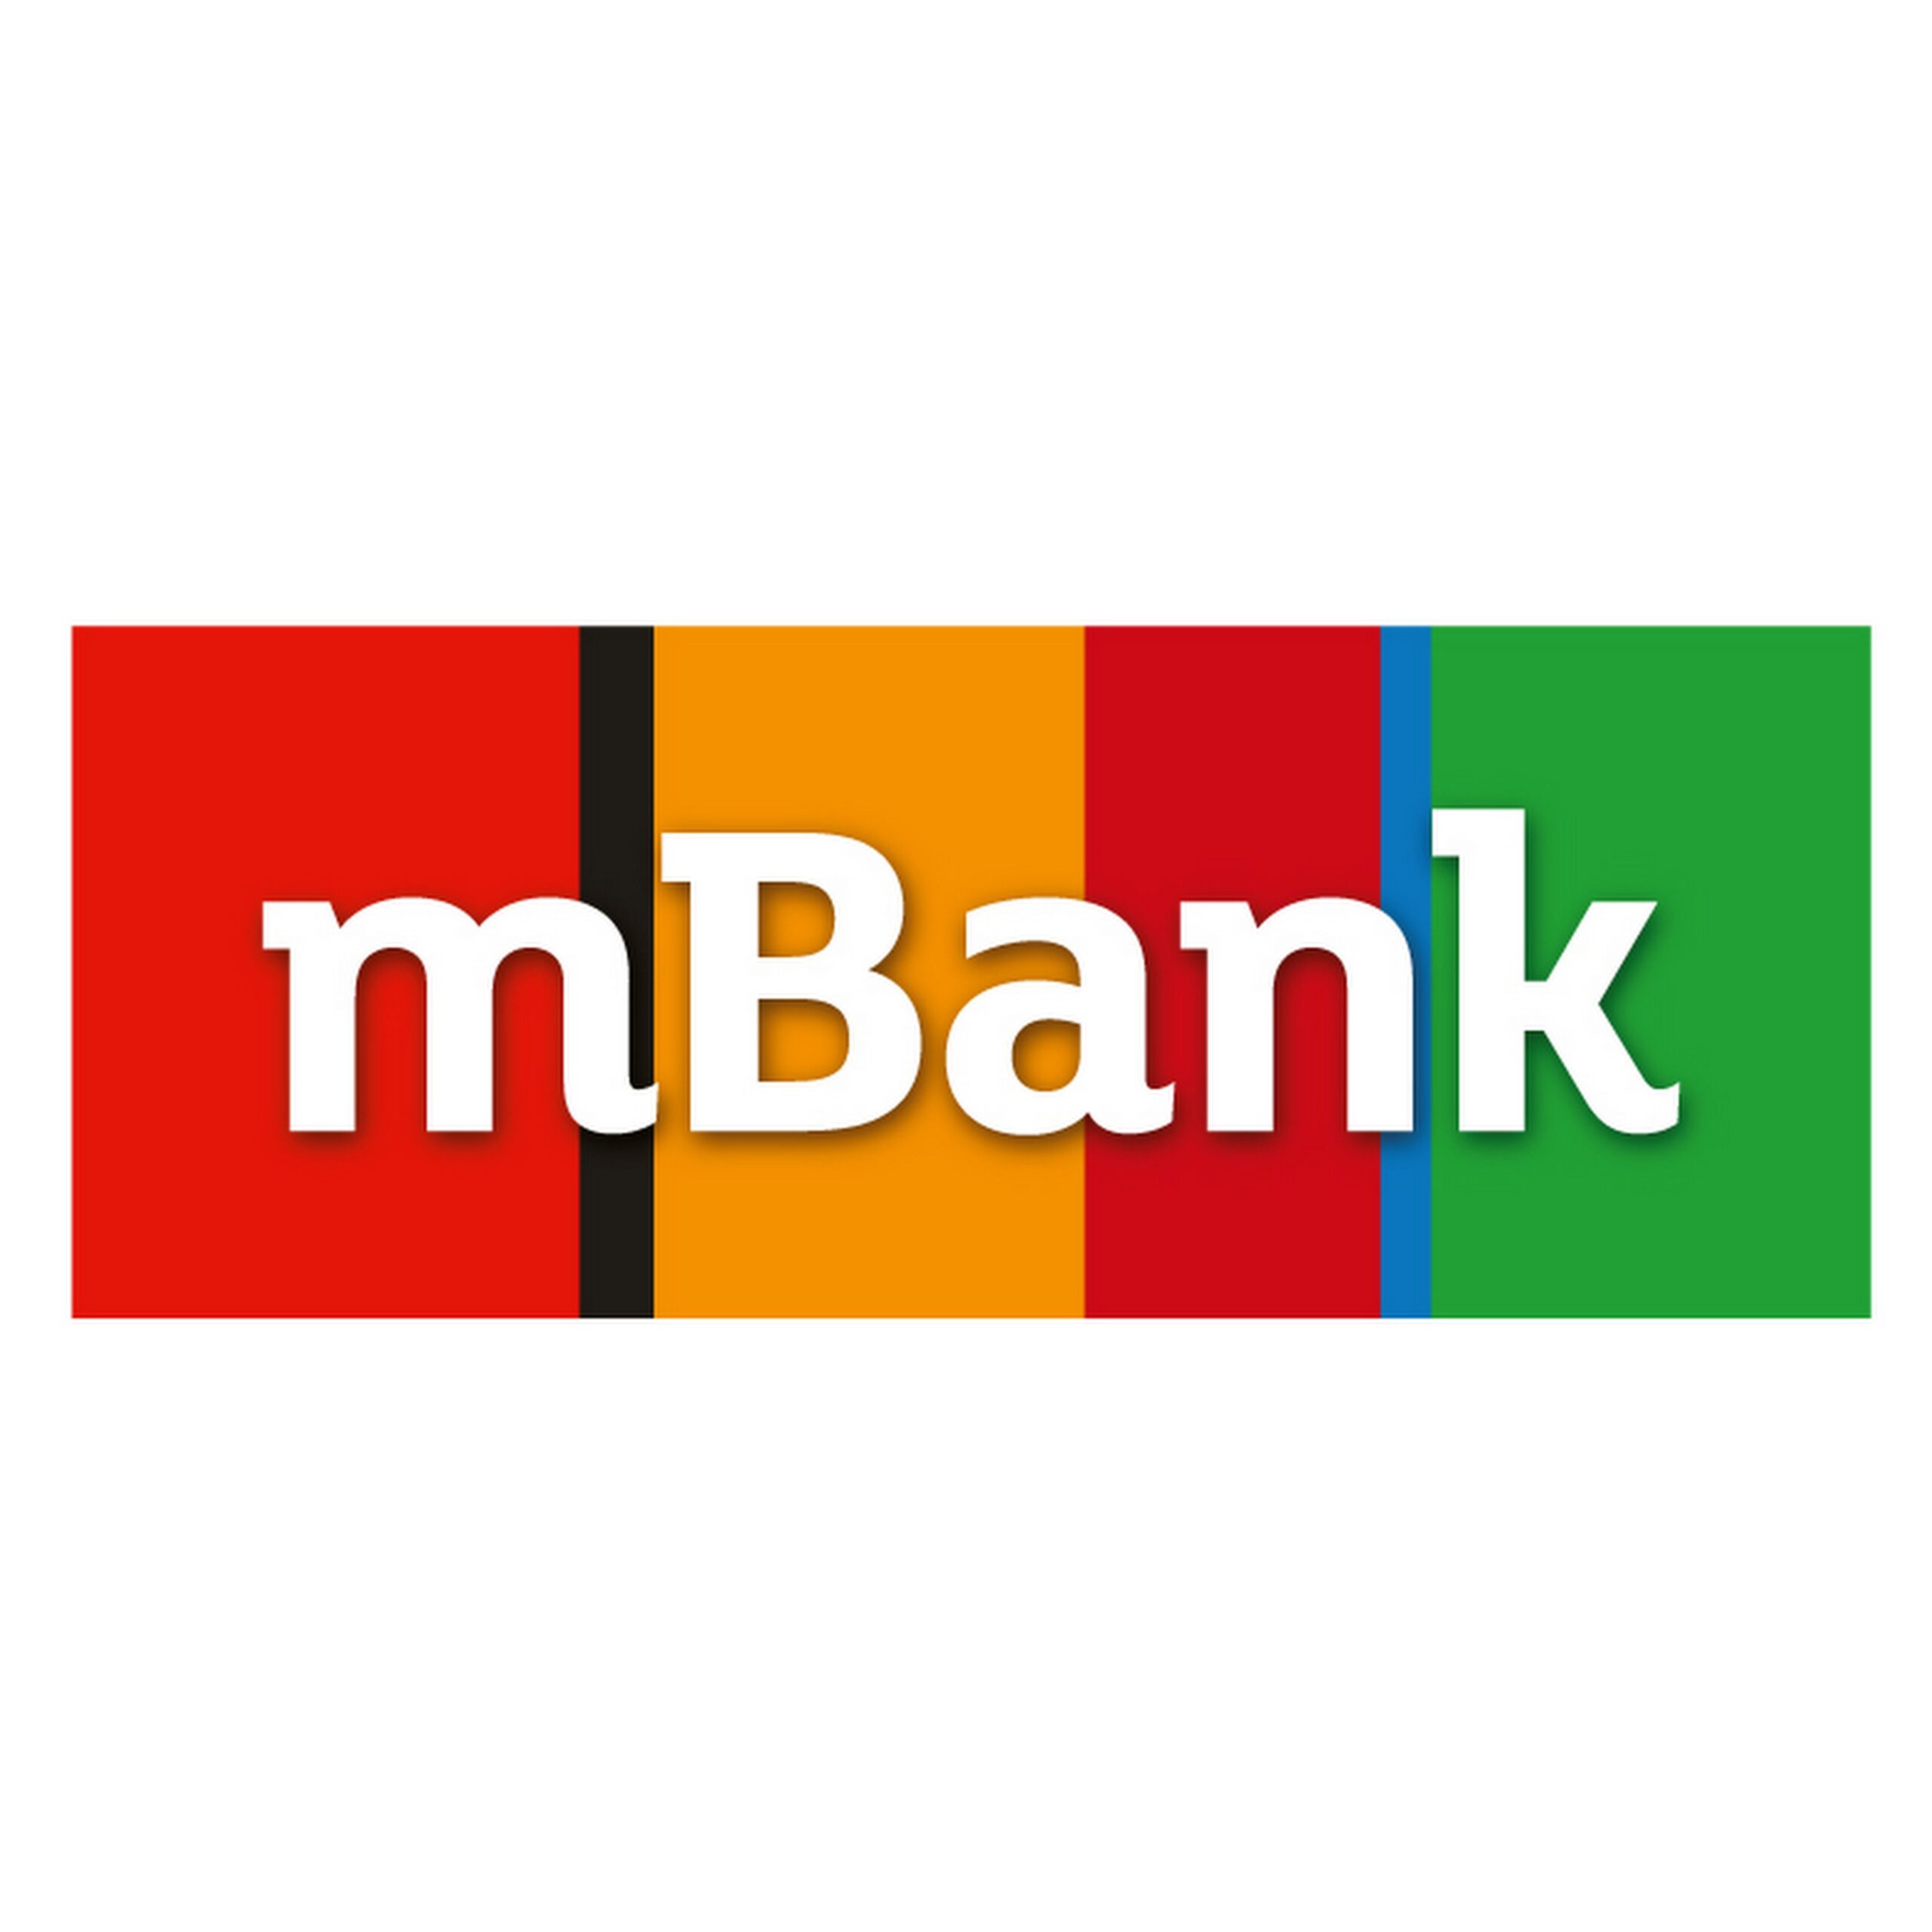 Grupa mBank zakończyła przetarg Insignia mediarun com logo mbank scaled